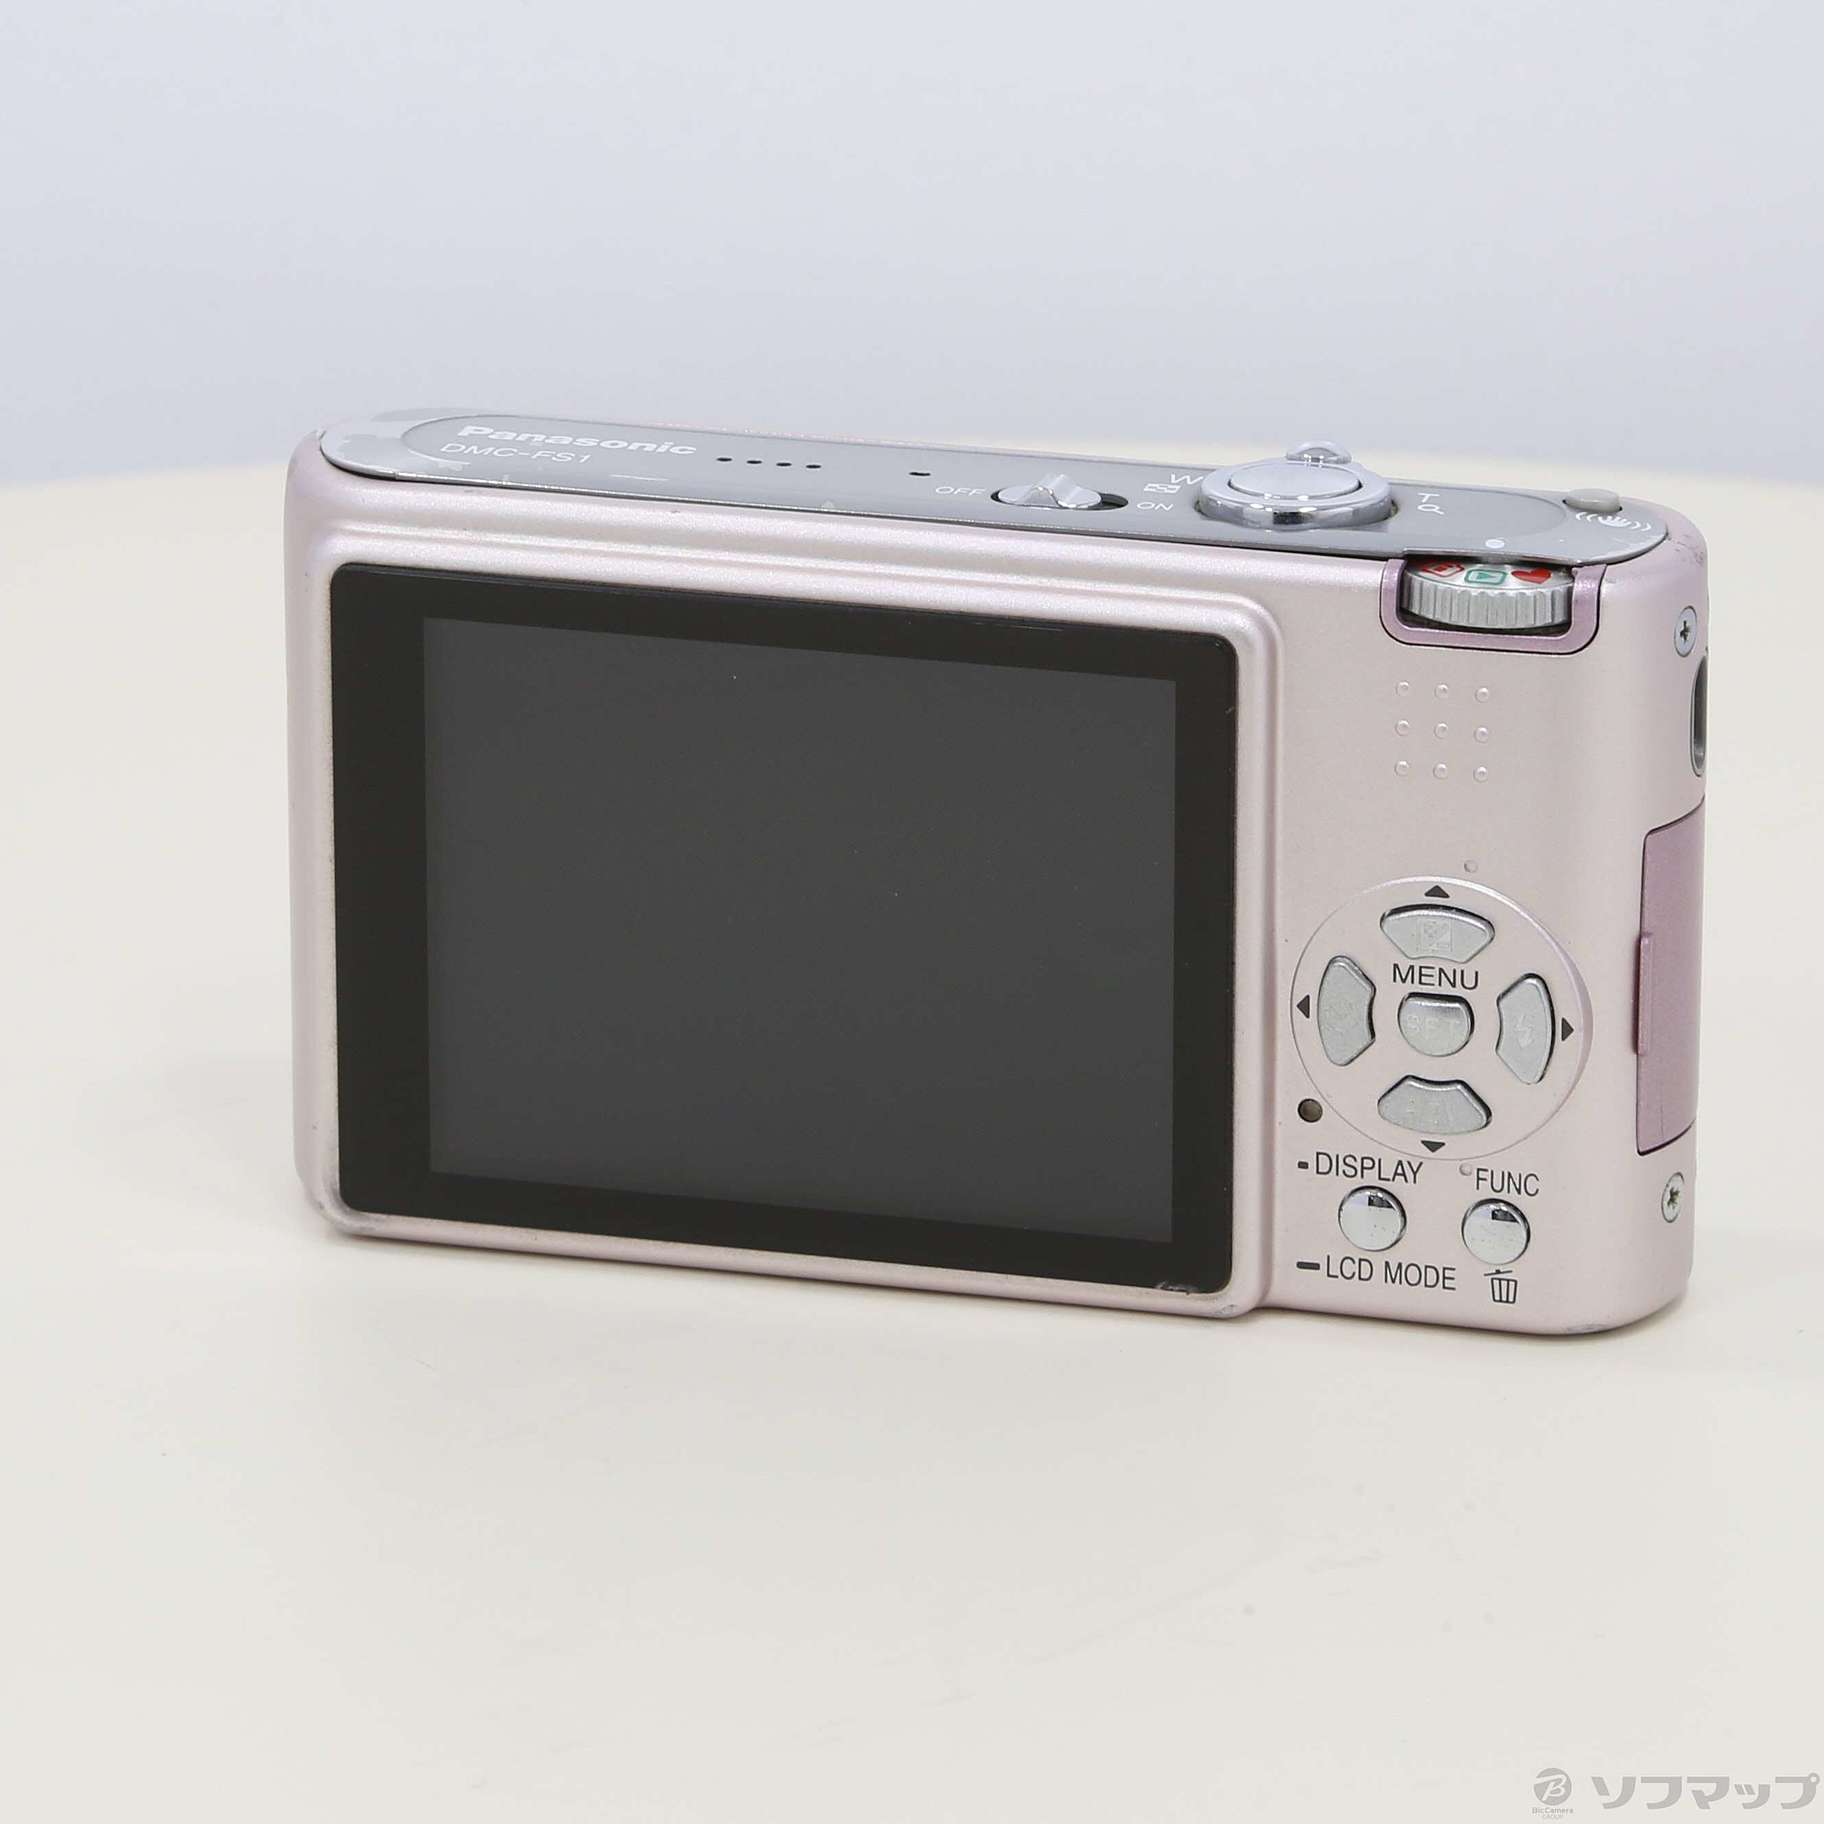 パナソニック Panasonic LUMIX  DMC-FS1 デジタルカメラ